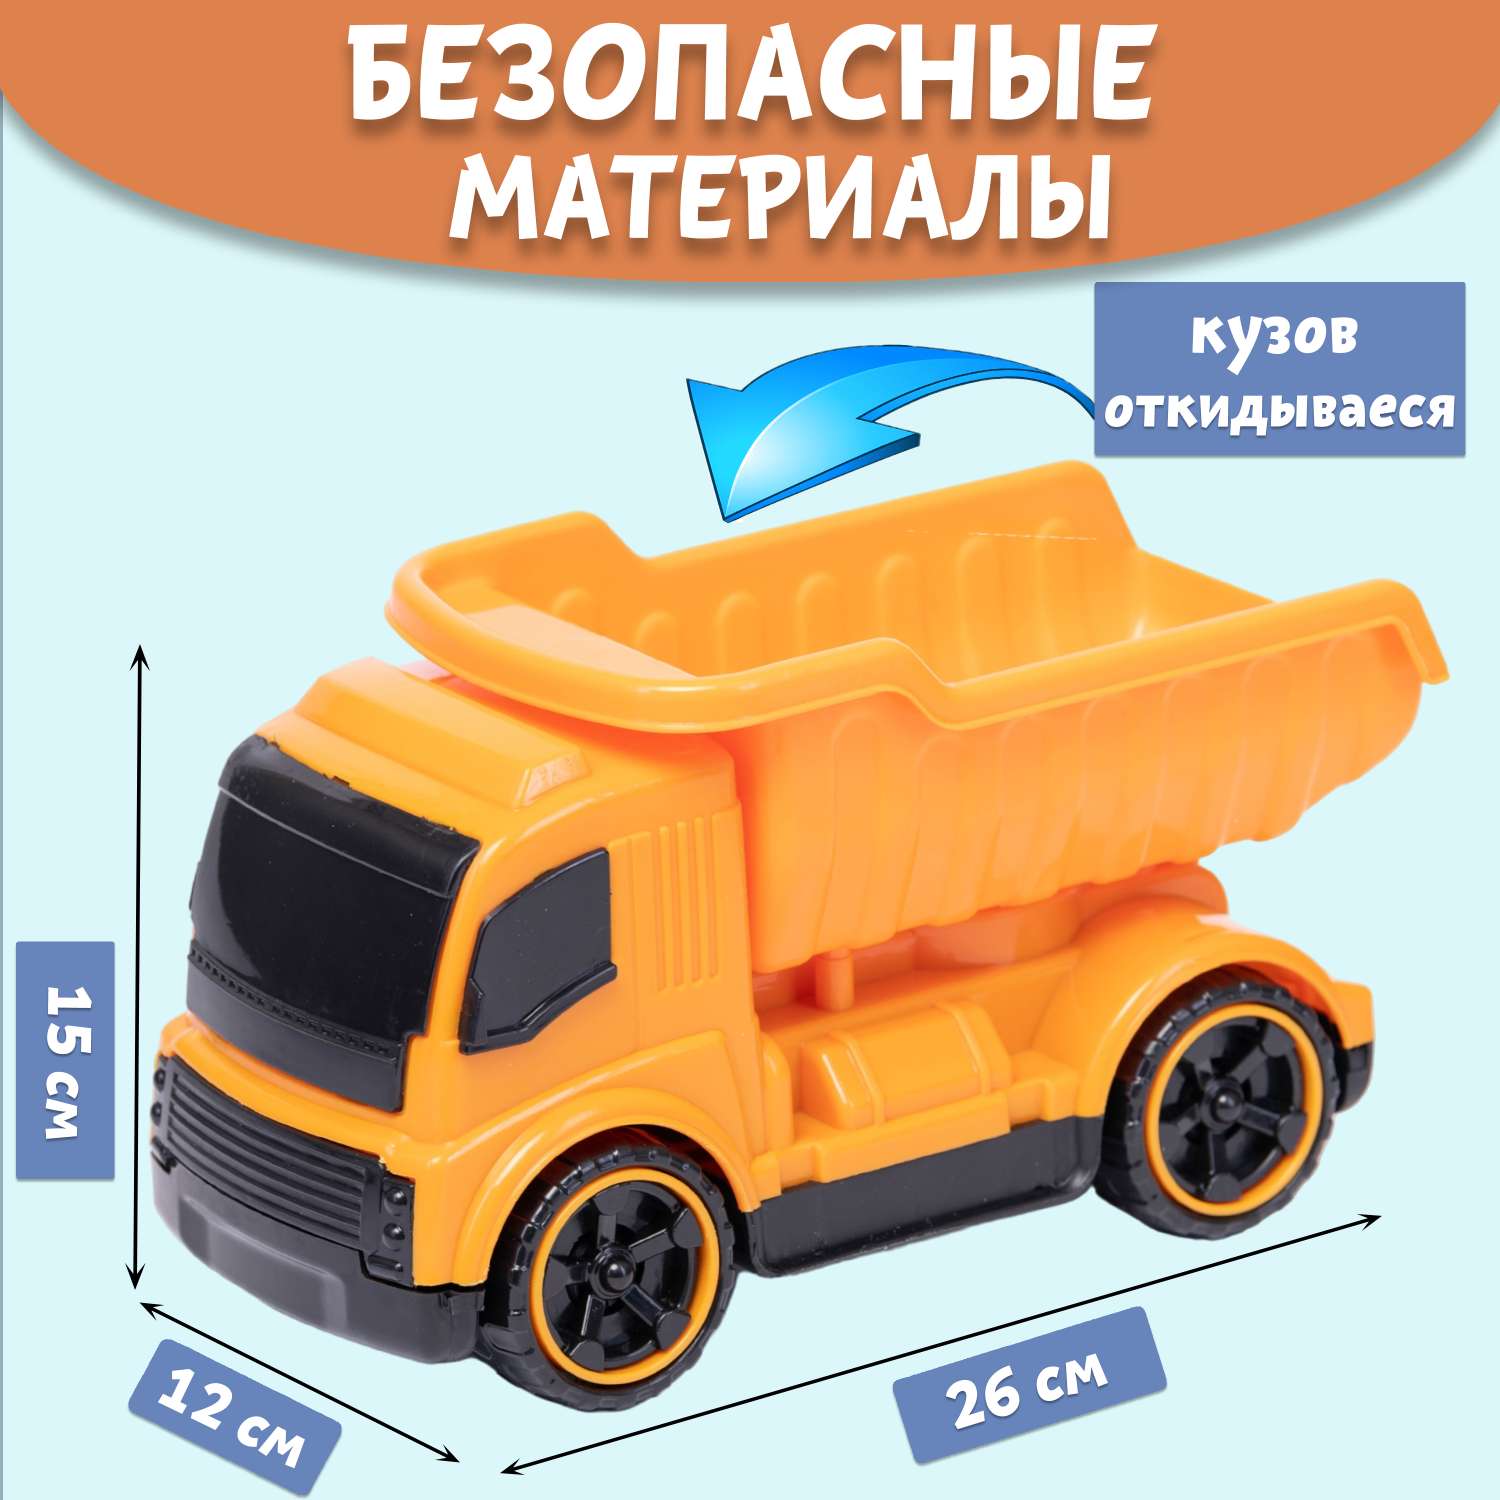 Машинка Нижегородская игрушка Самосвал оранжевый ктг270_ор - фото 3